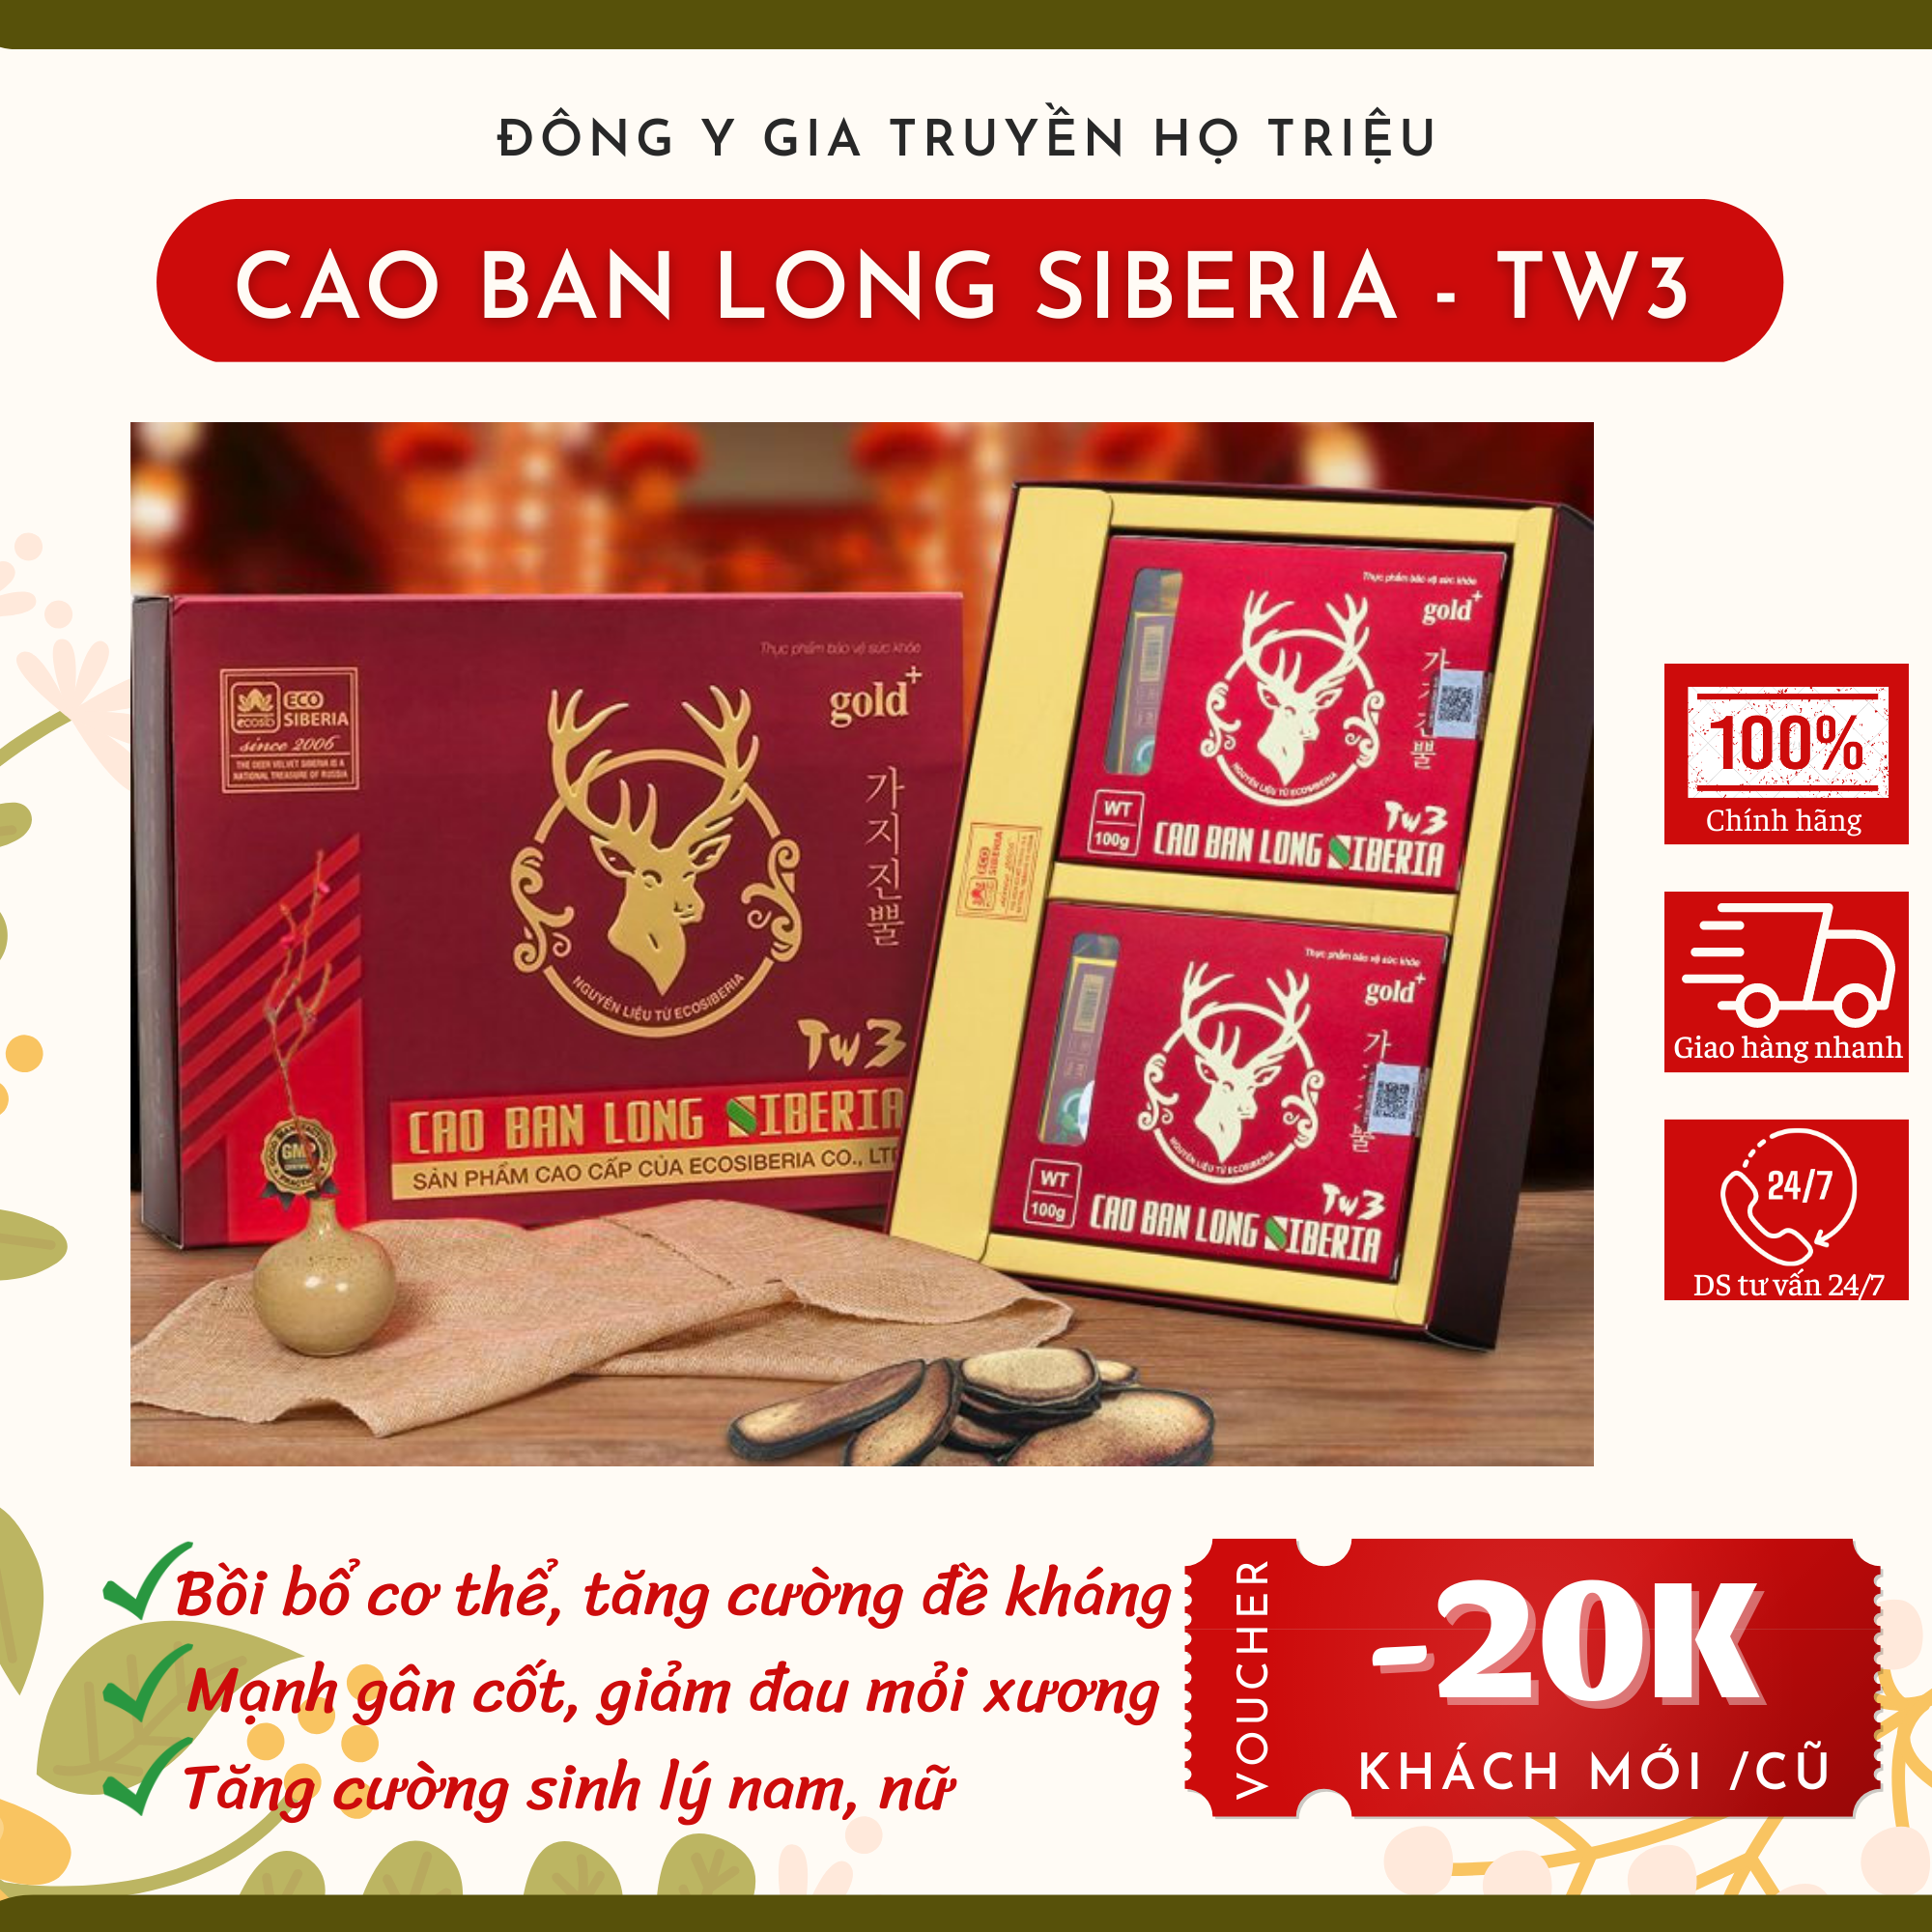 CHÍNH HÃNG Cao Ban Long SIBERIA - TW3 Hộp 100g